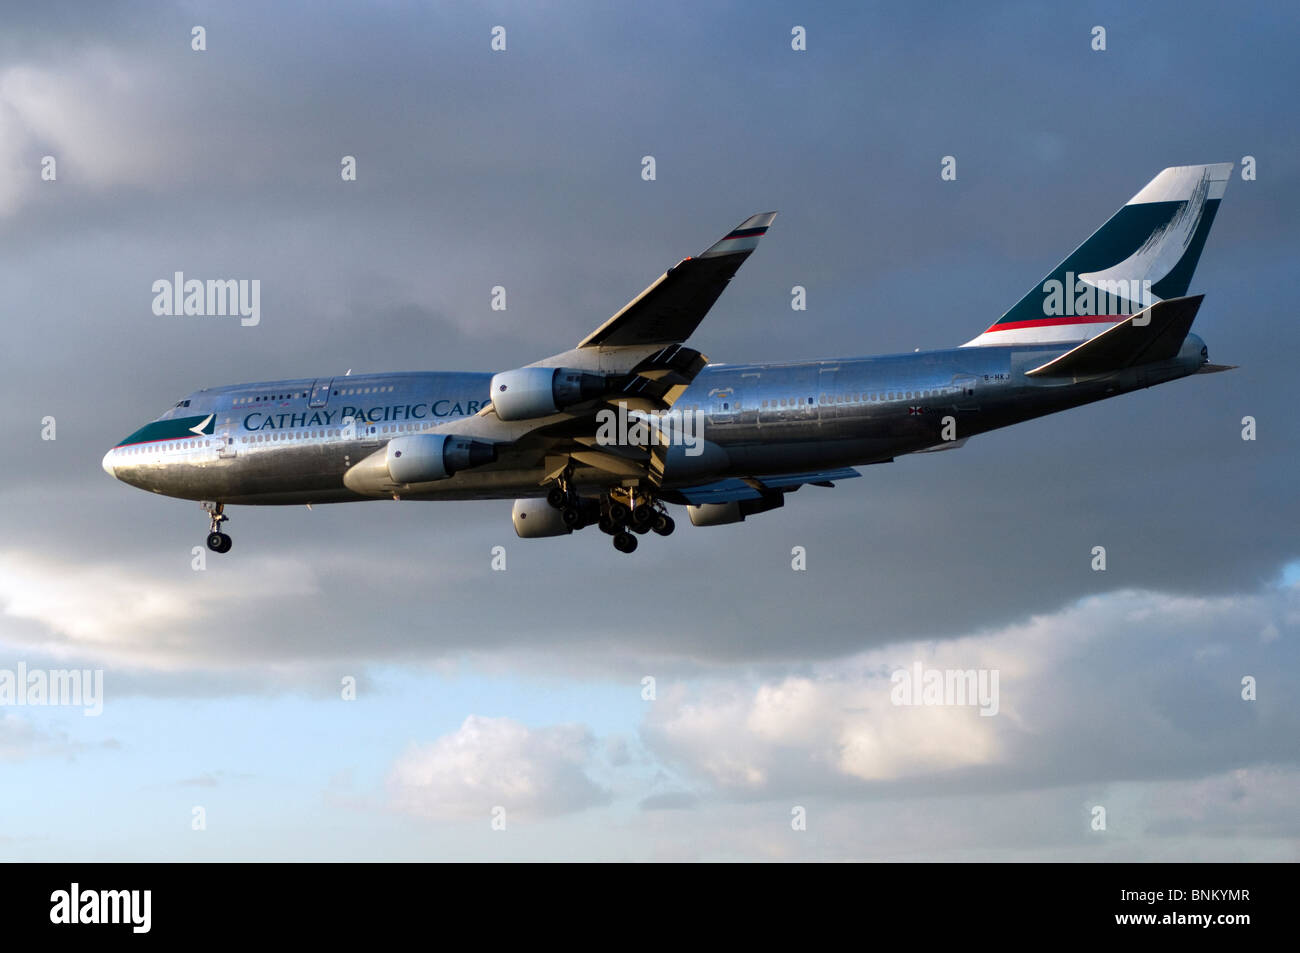 Boeing 747 exploité par Cathay Pacific Cargo en approche pour l'atterrissage à l'aéroport Heathrow de Londres, Royaume-Uni. Banque D'Images